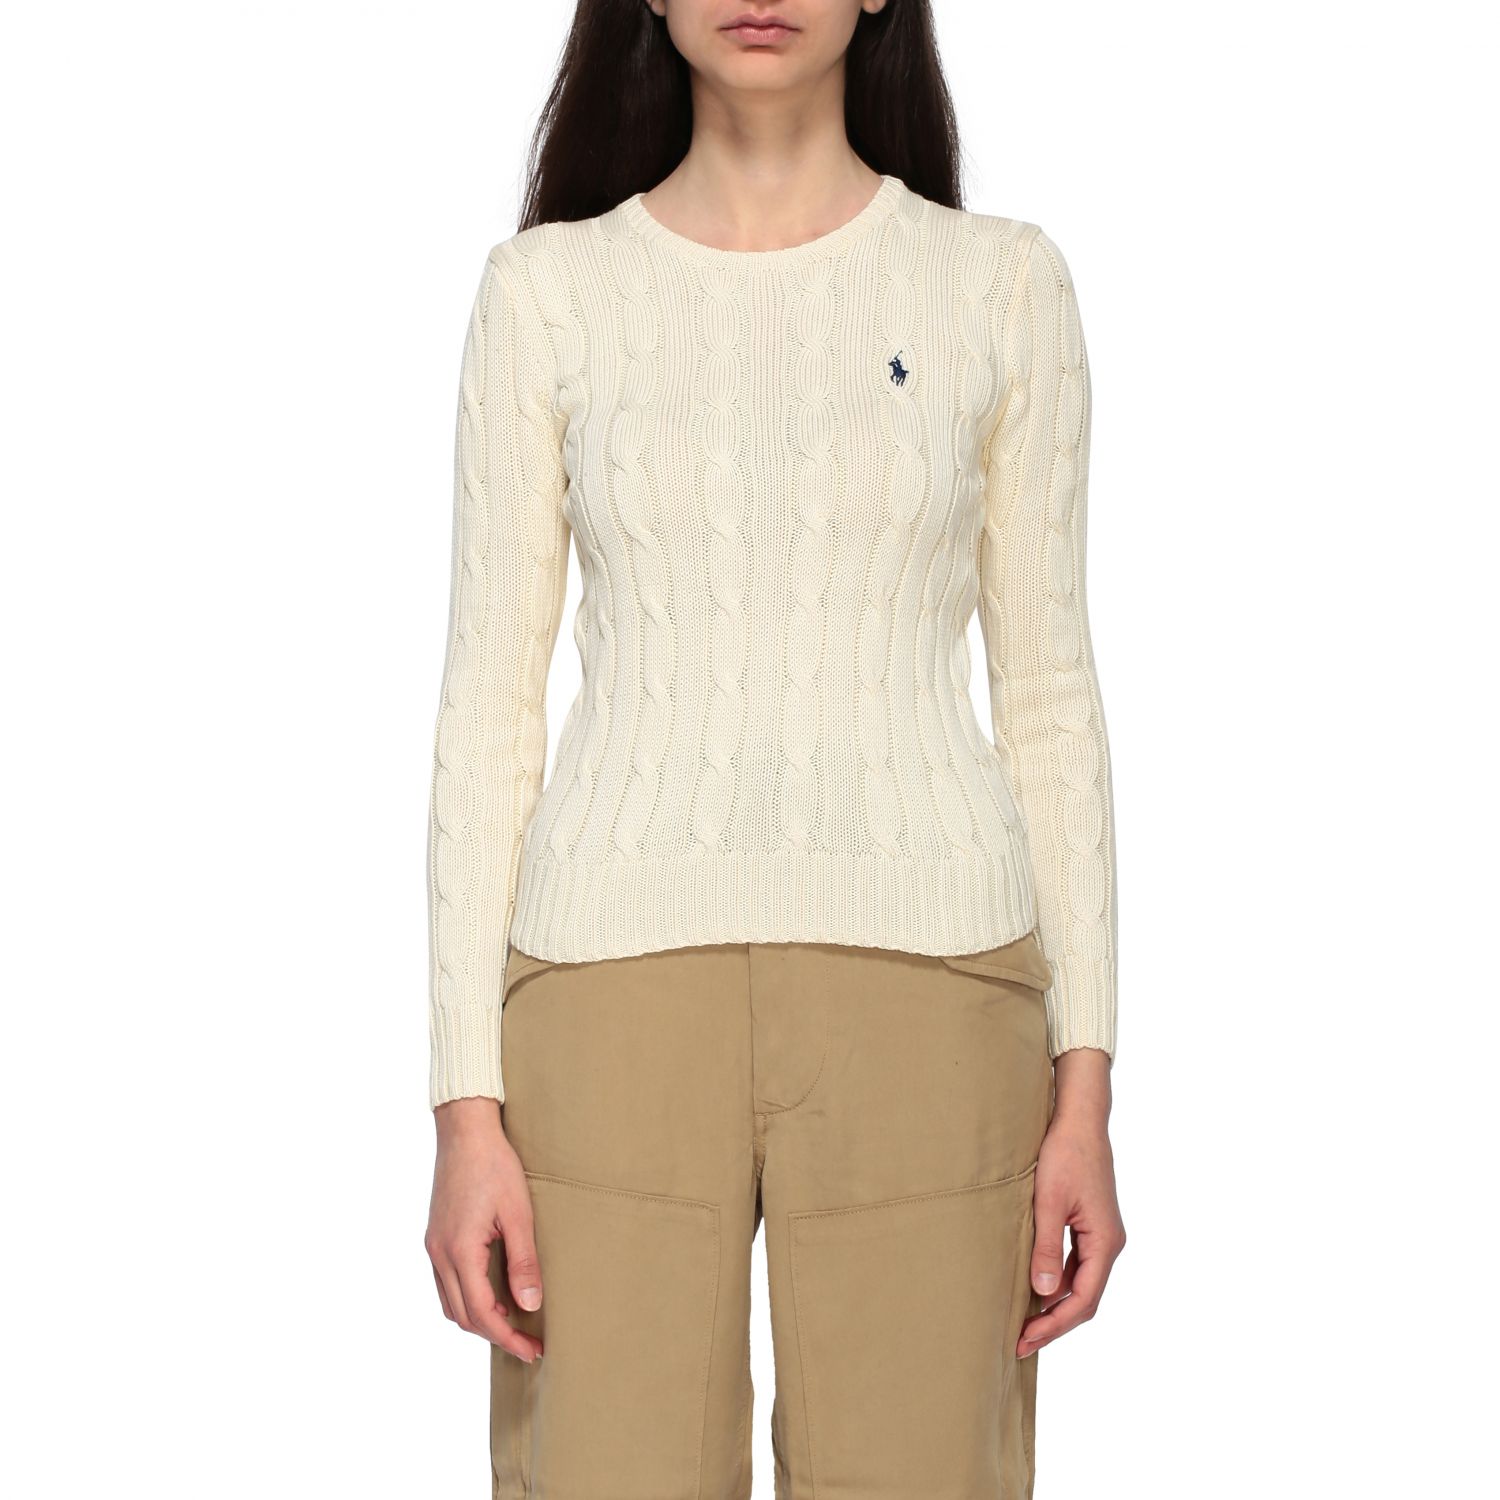 POLO RALPH LAUREN: Sweater women - Cream | Sweater Polo Ralph Lauren ...